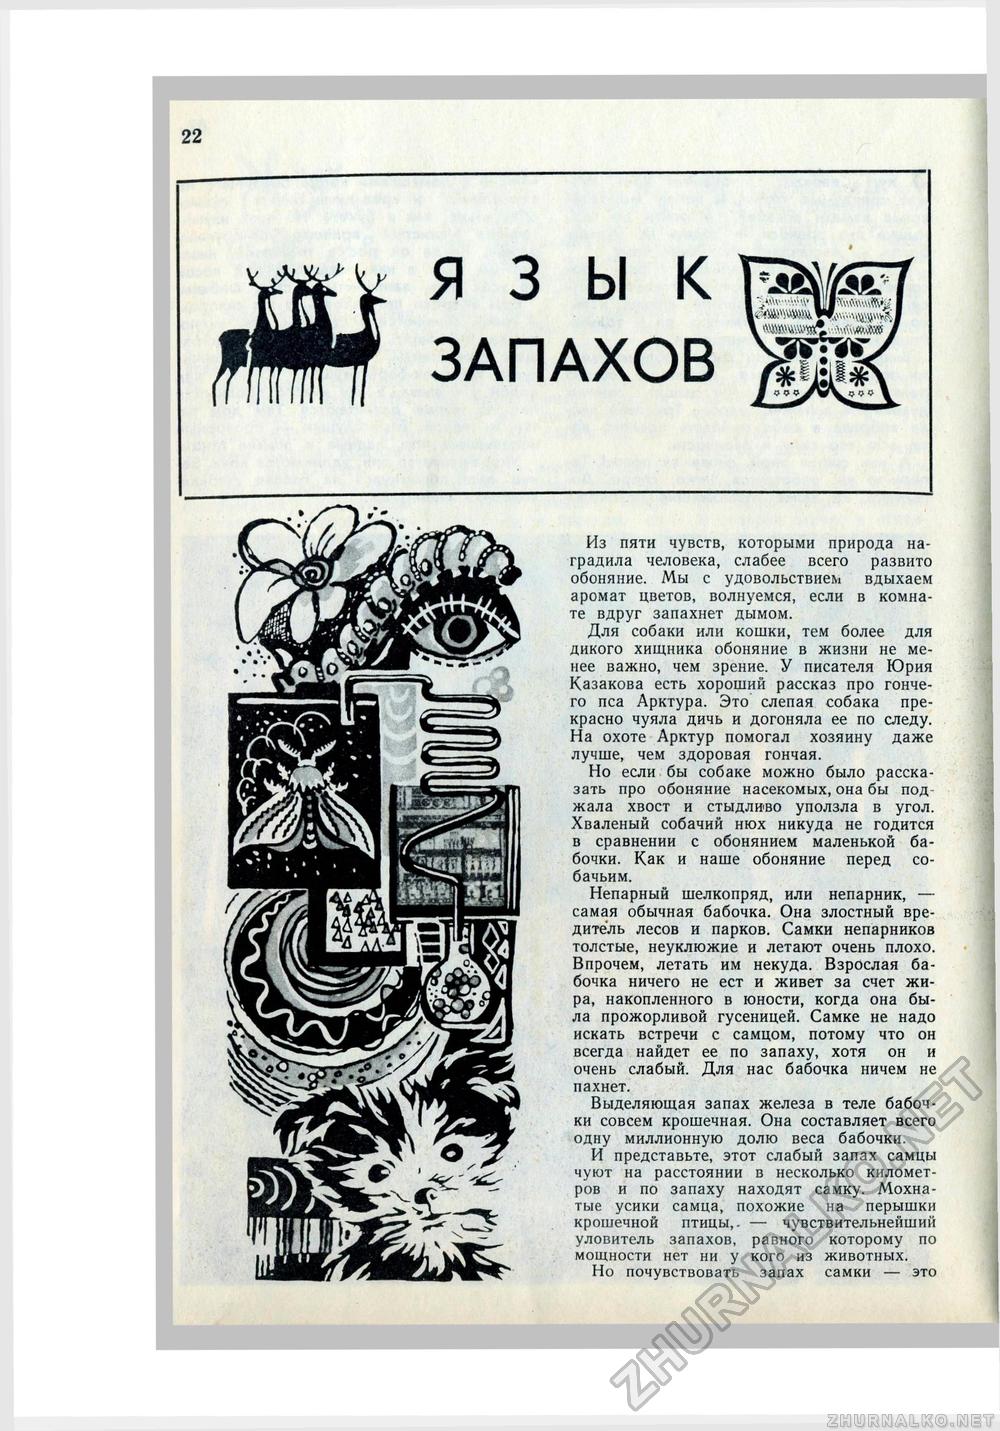   1971-07,  23